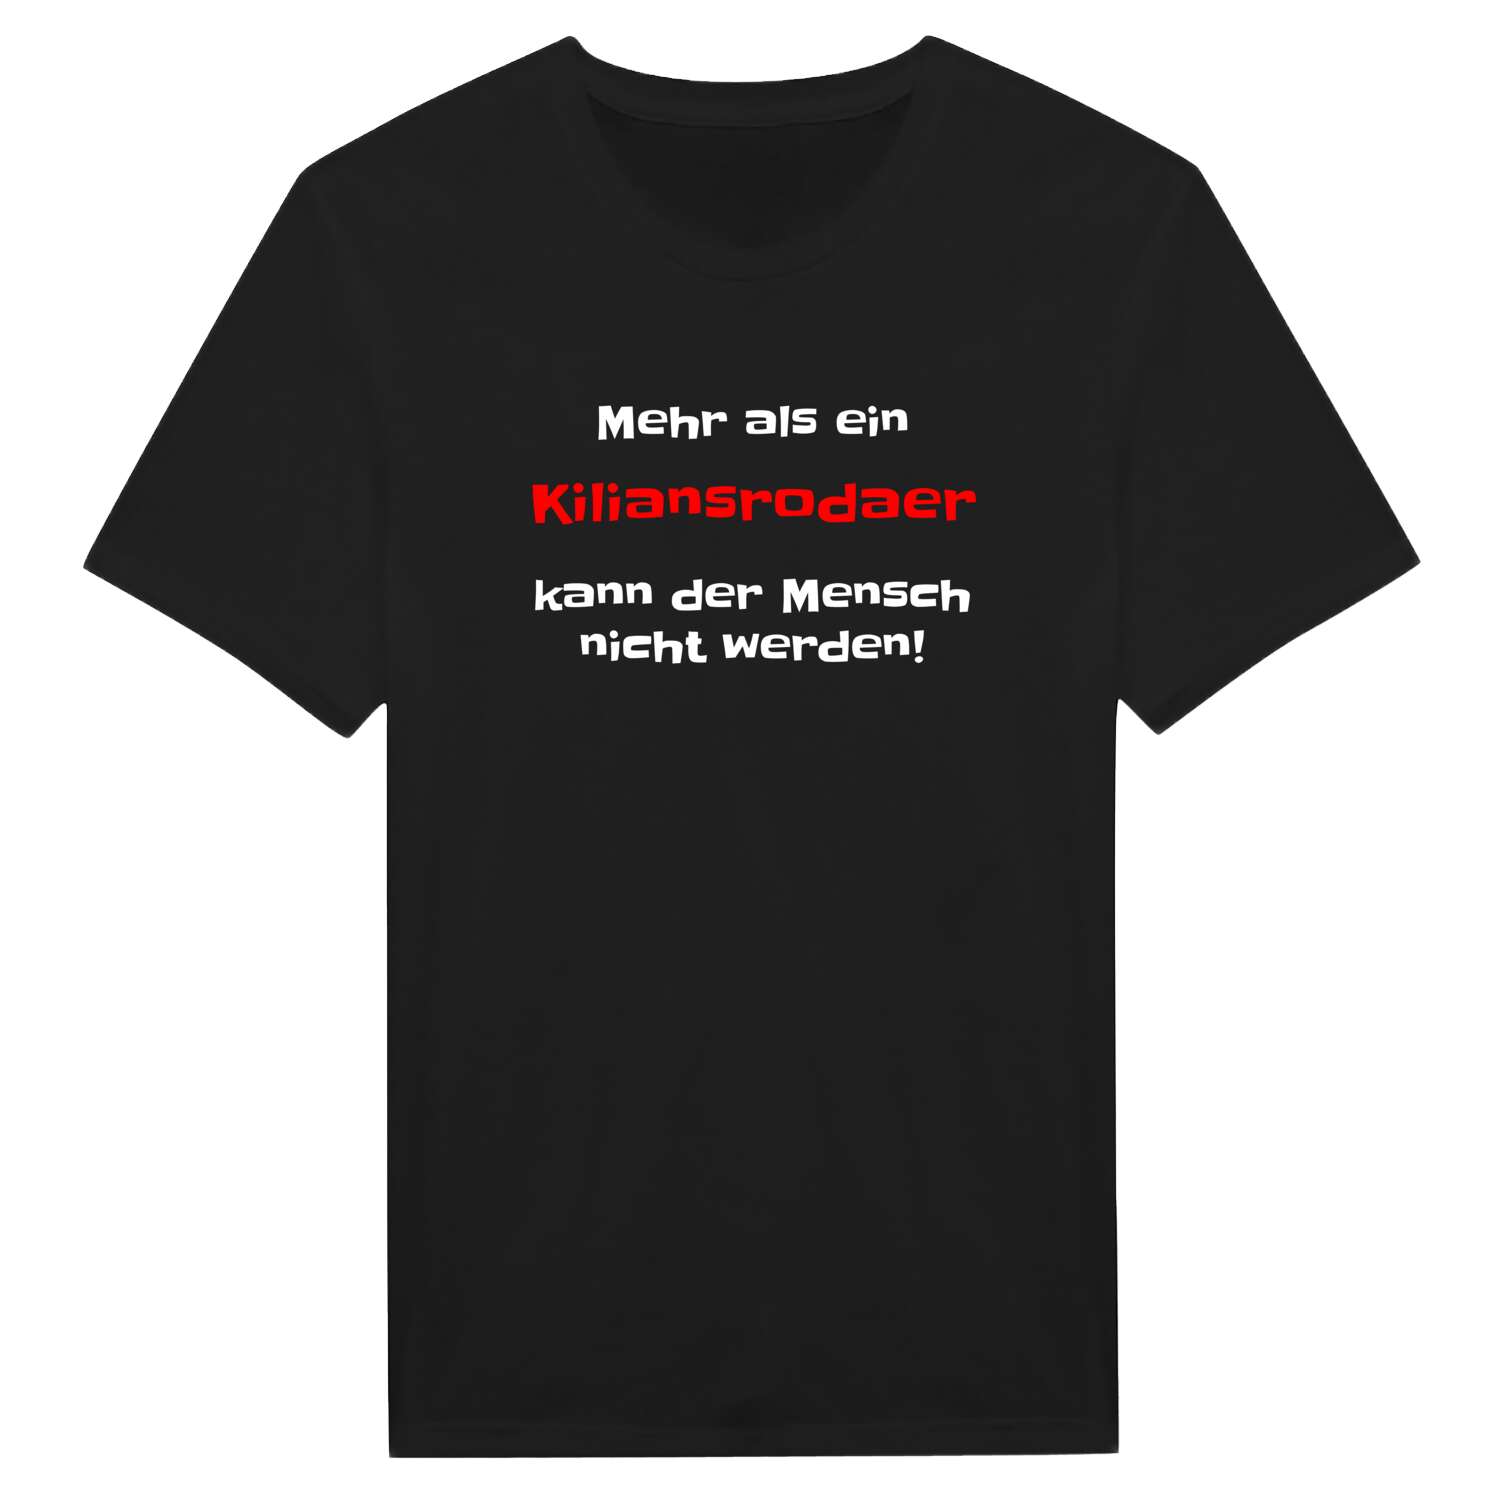 Kiliansroda T-Shirt »Mehr als ein«